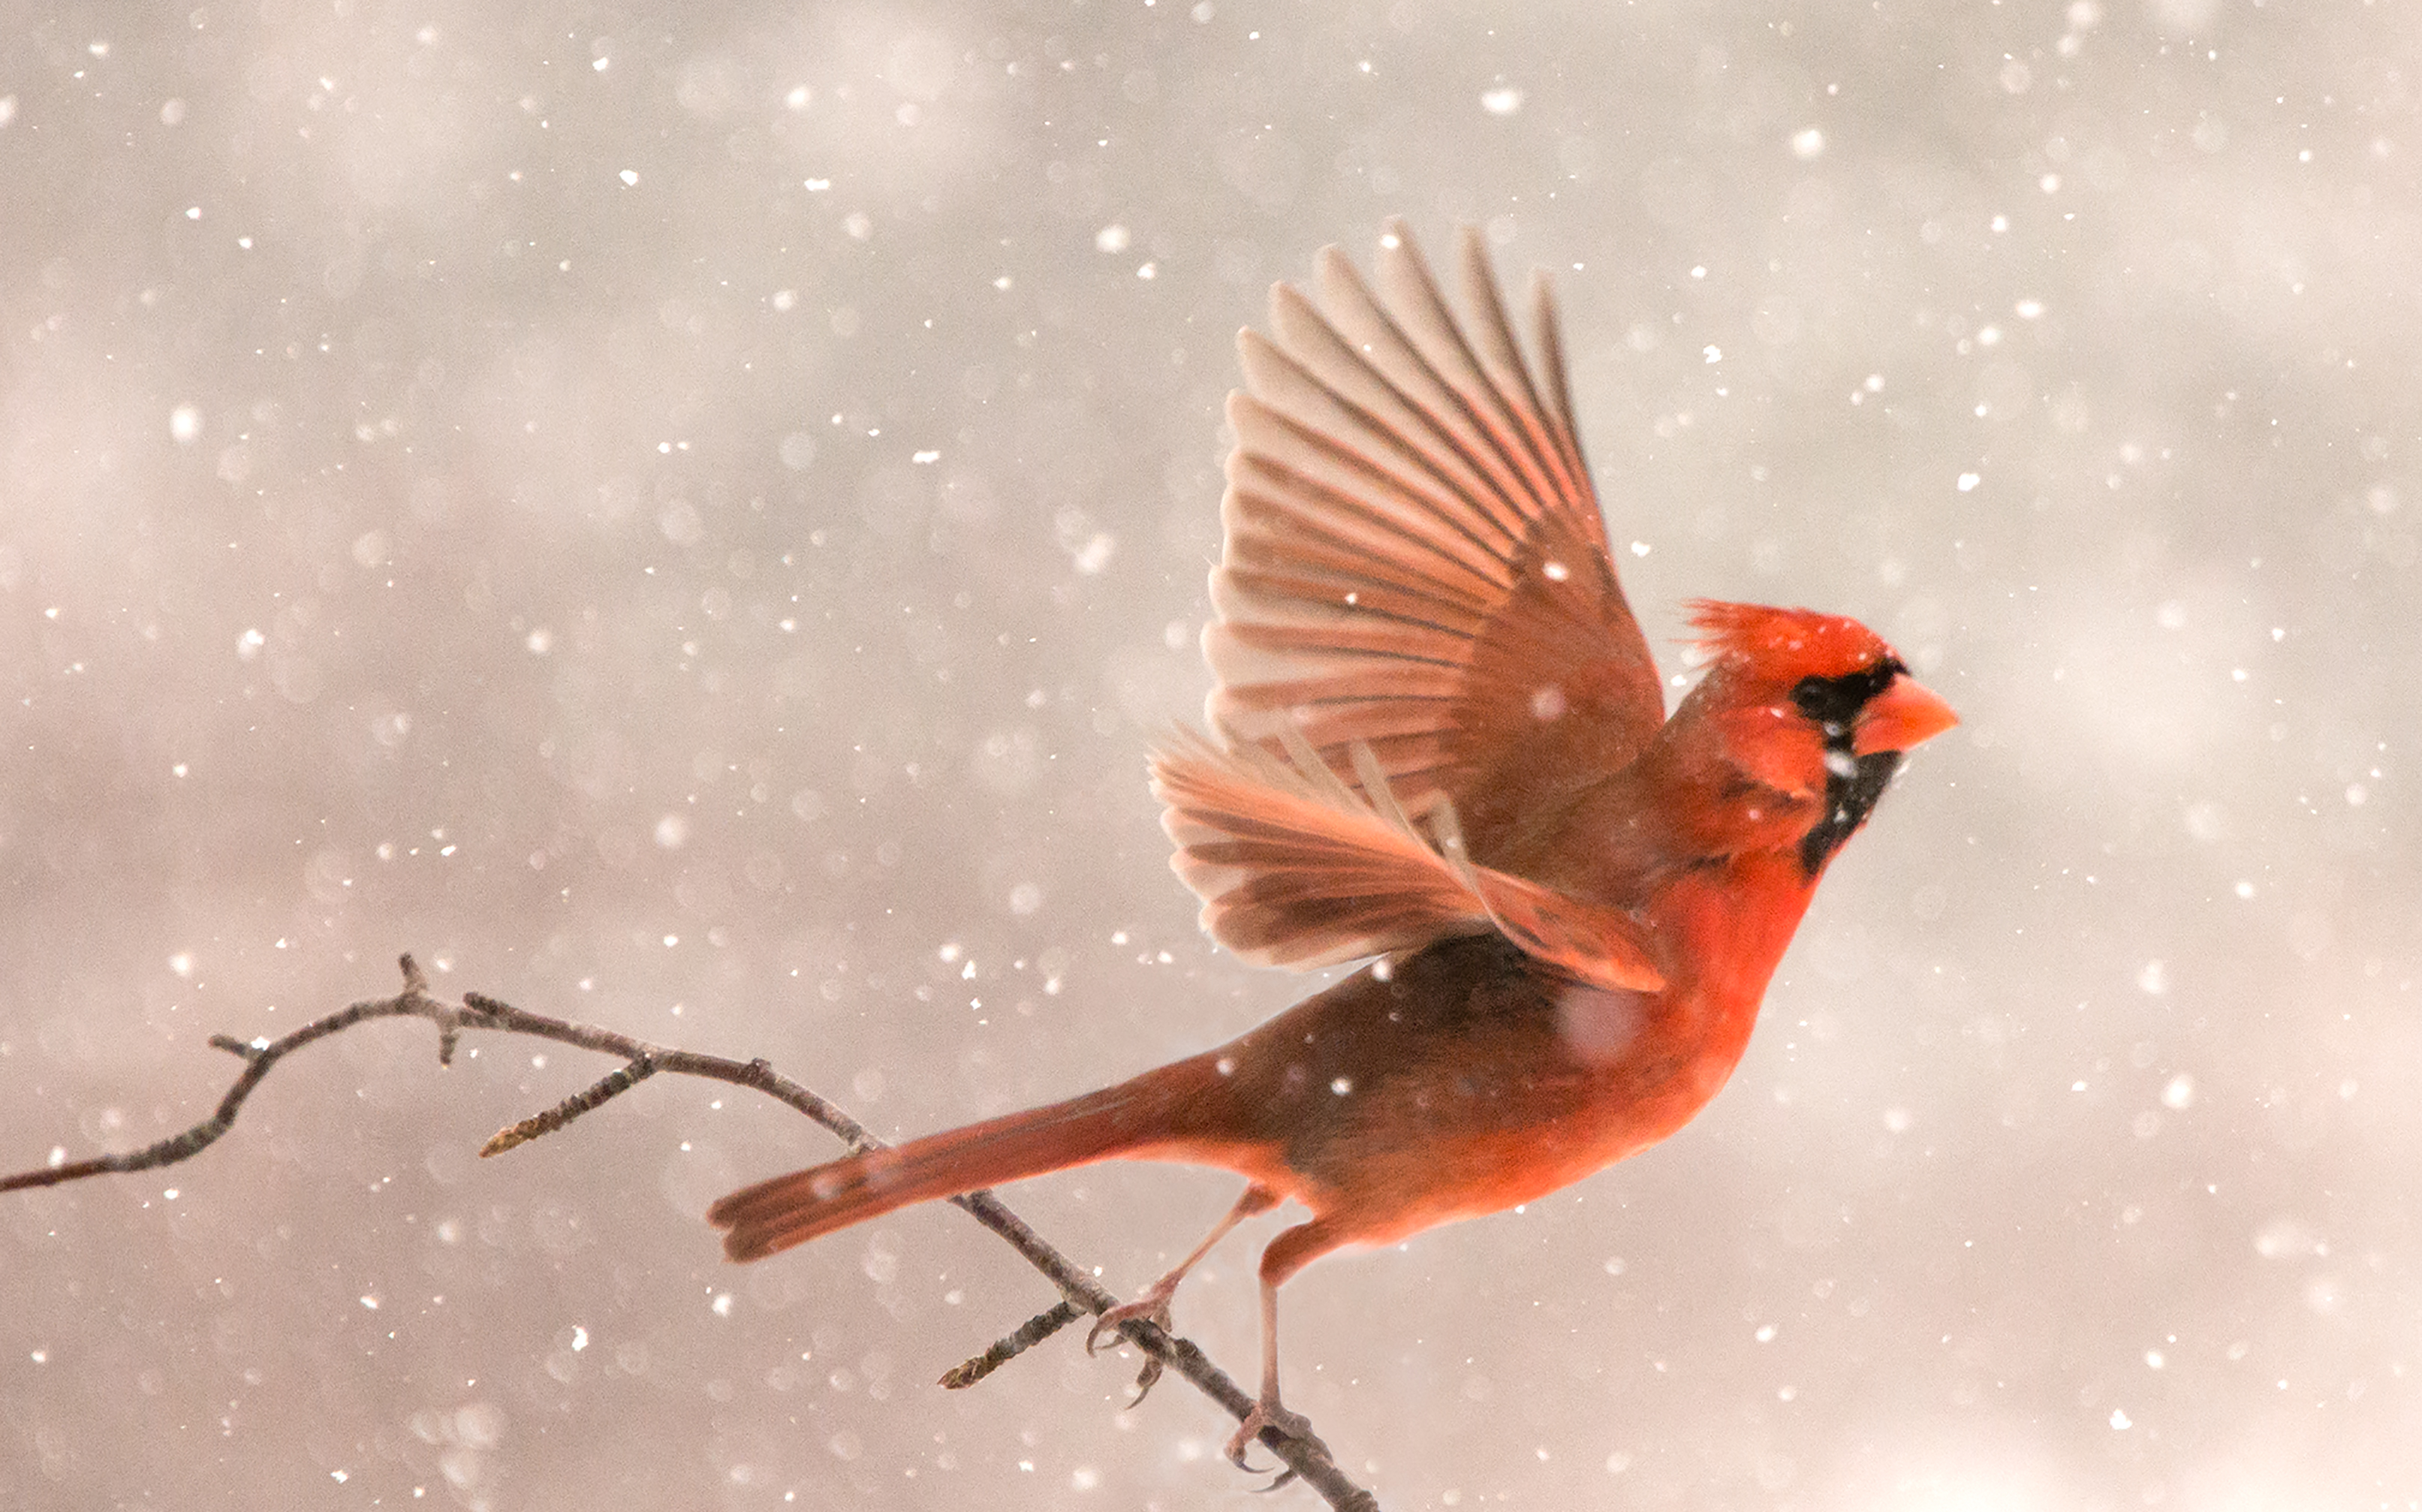 Flight - Red Bird Series by Photographer Sher Kamman